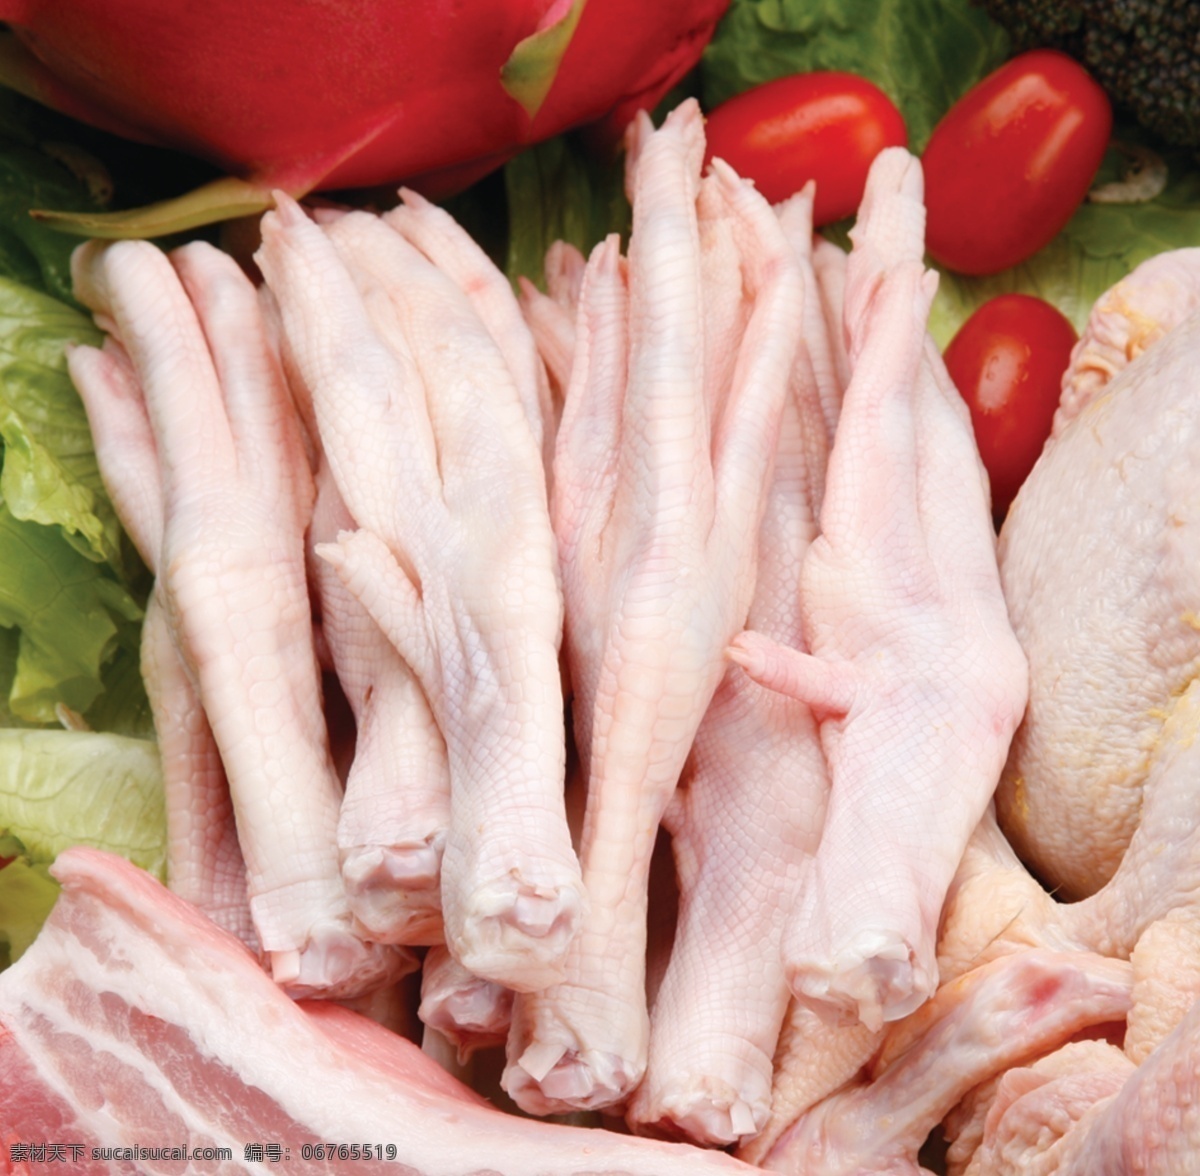 鸭掌图片 鸭掌 三鸟 鸡禽 肉类 熟食 蔬菜 杂粮 商超传单 海报 生鲜 分层